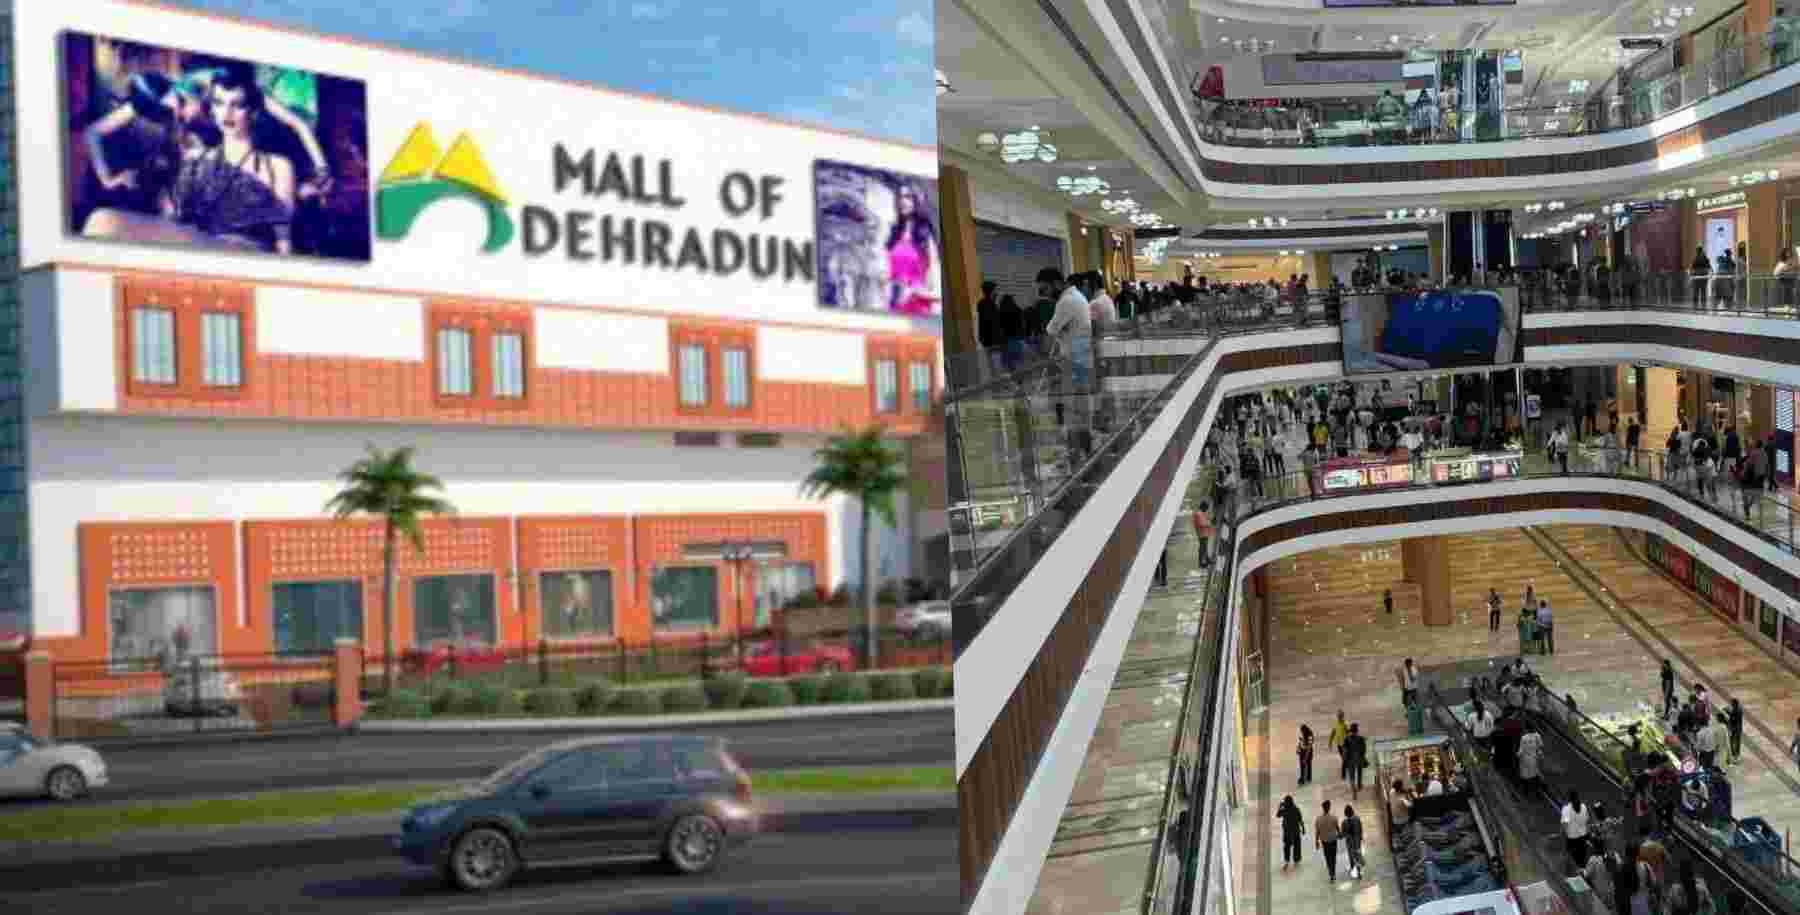 Mall of Dehradun